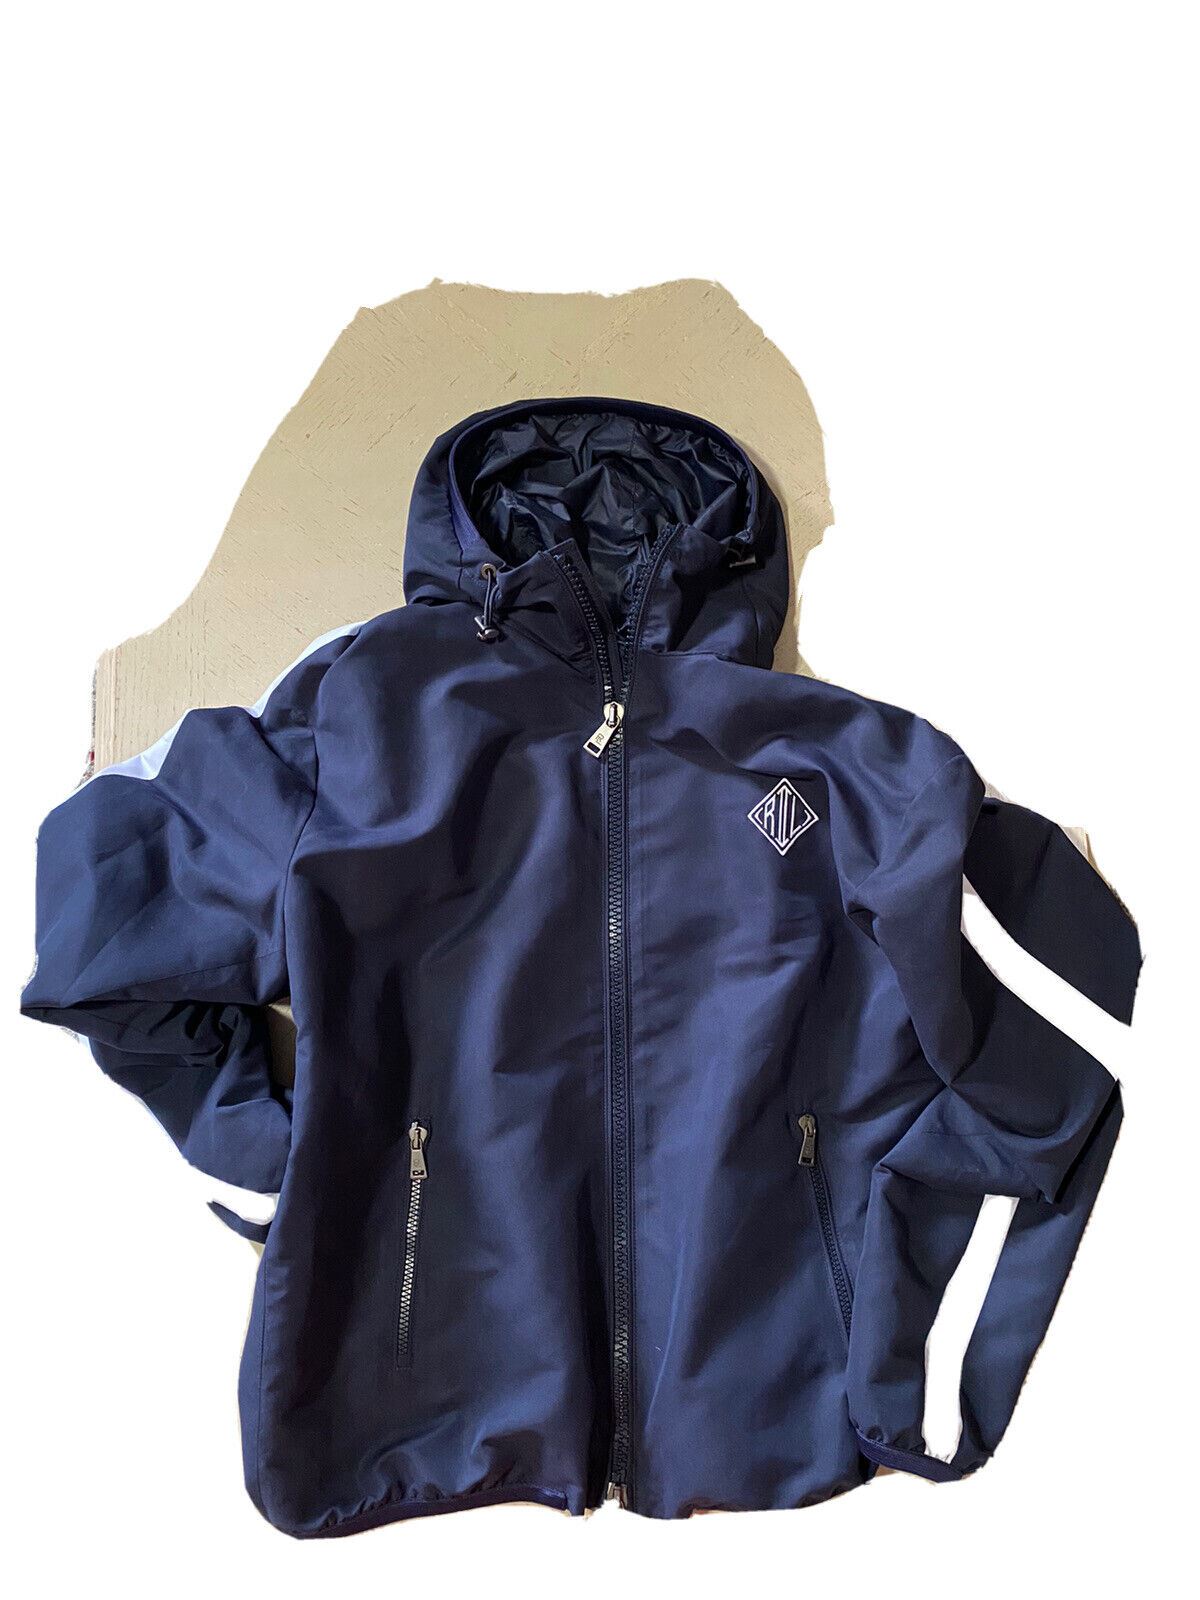 New $895 Ralph Lauren Purple Label Men Track Jacket Navy Size M